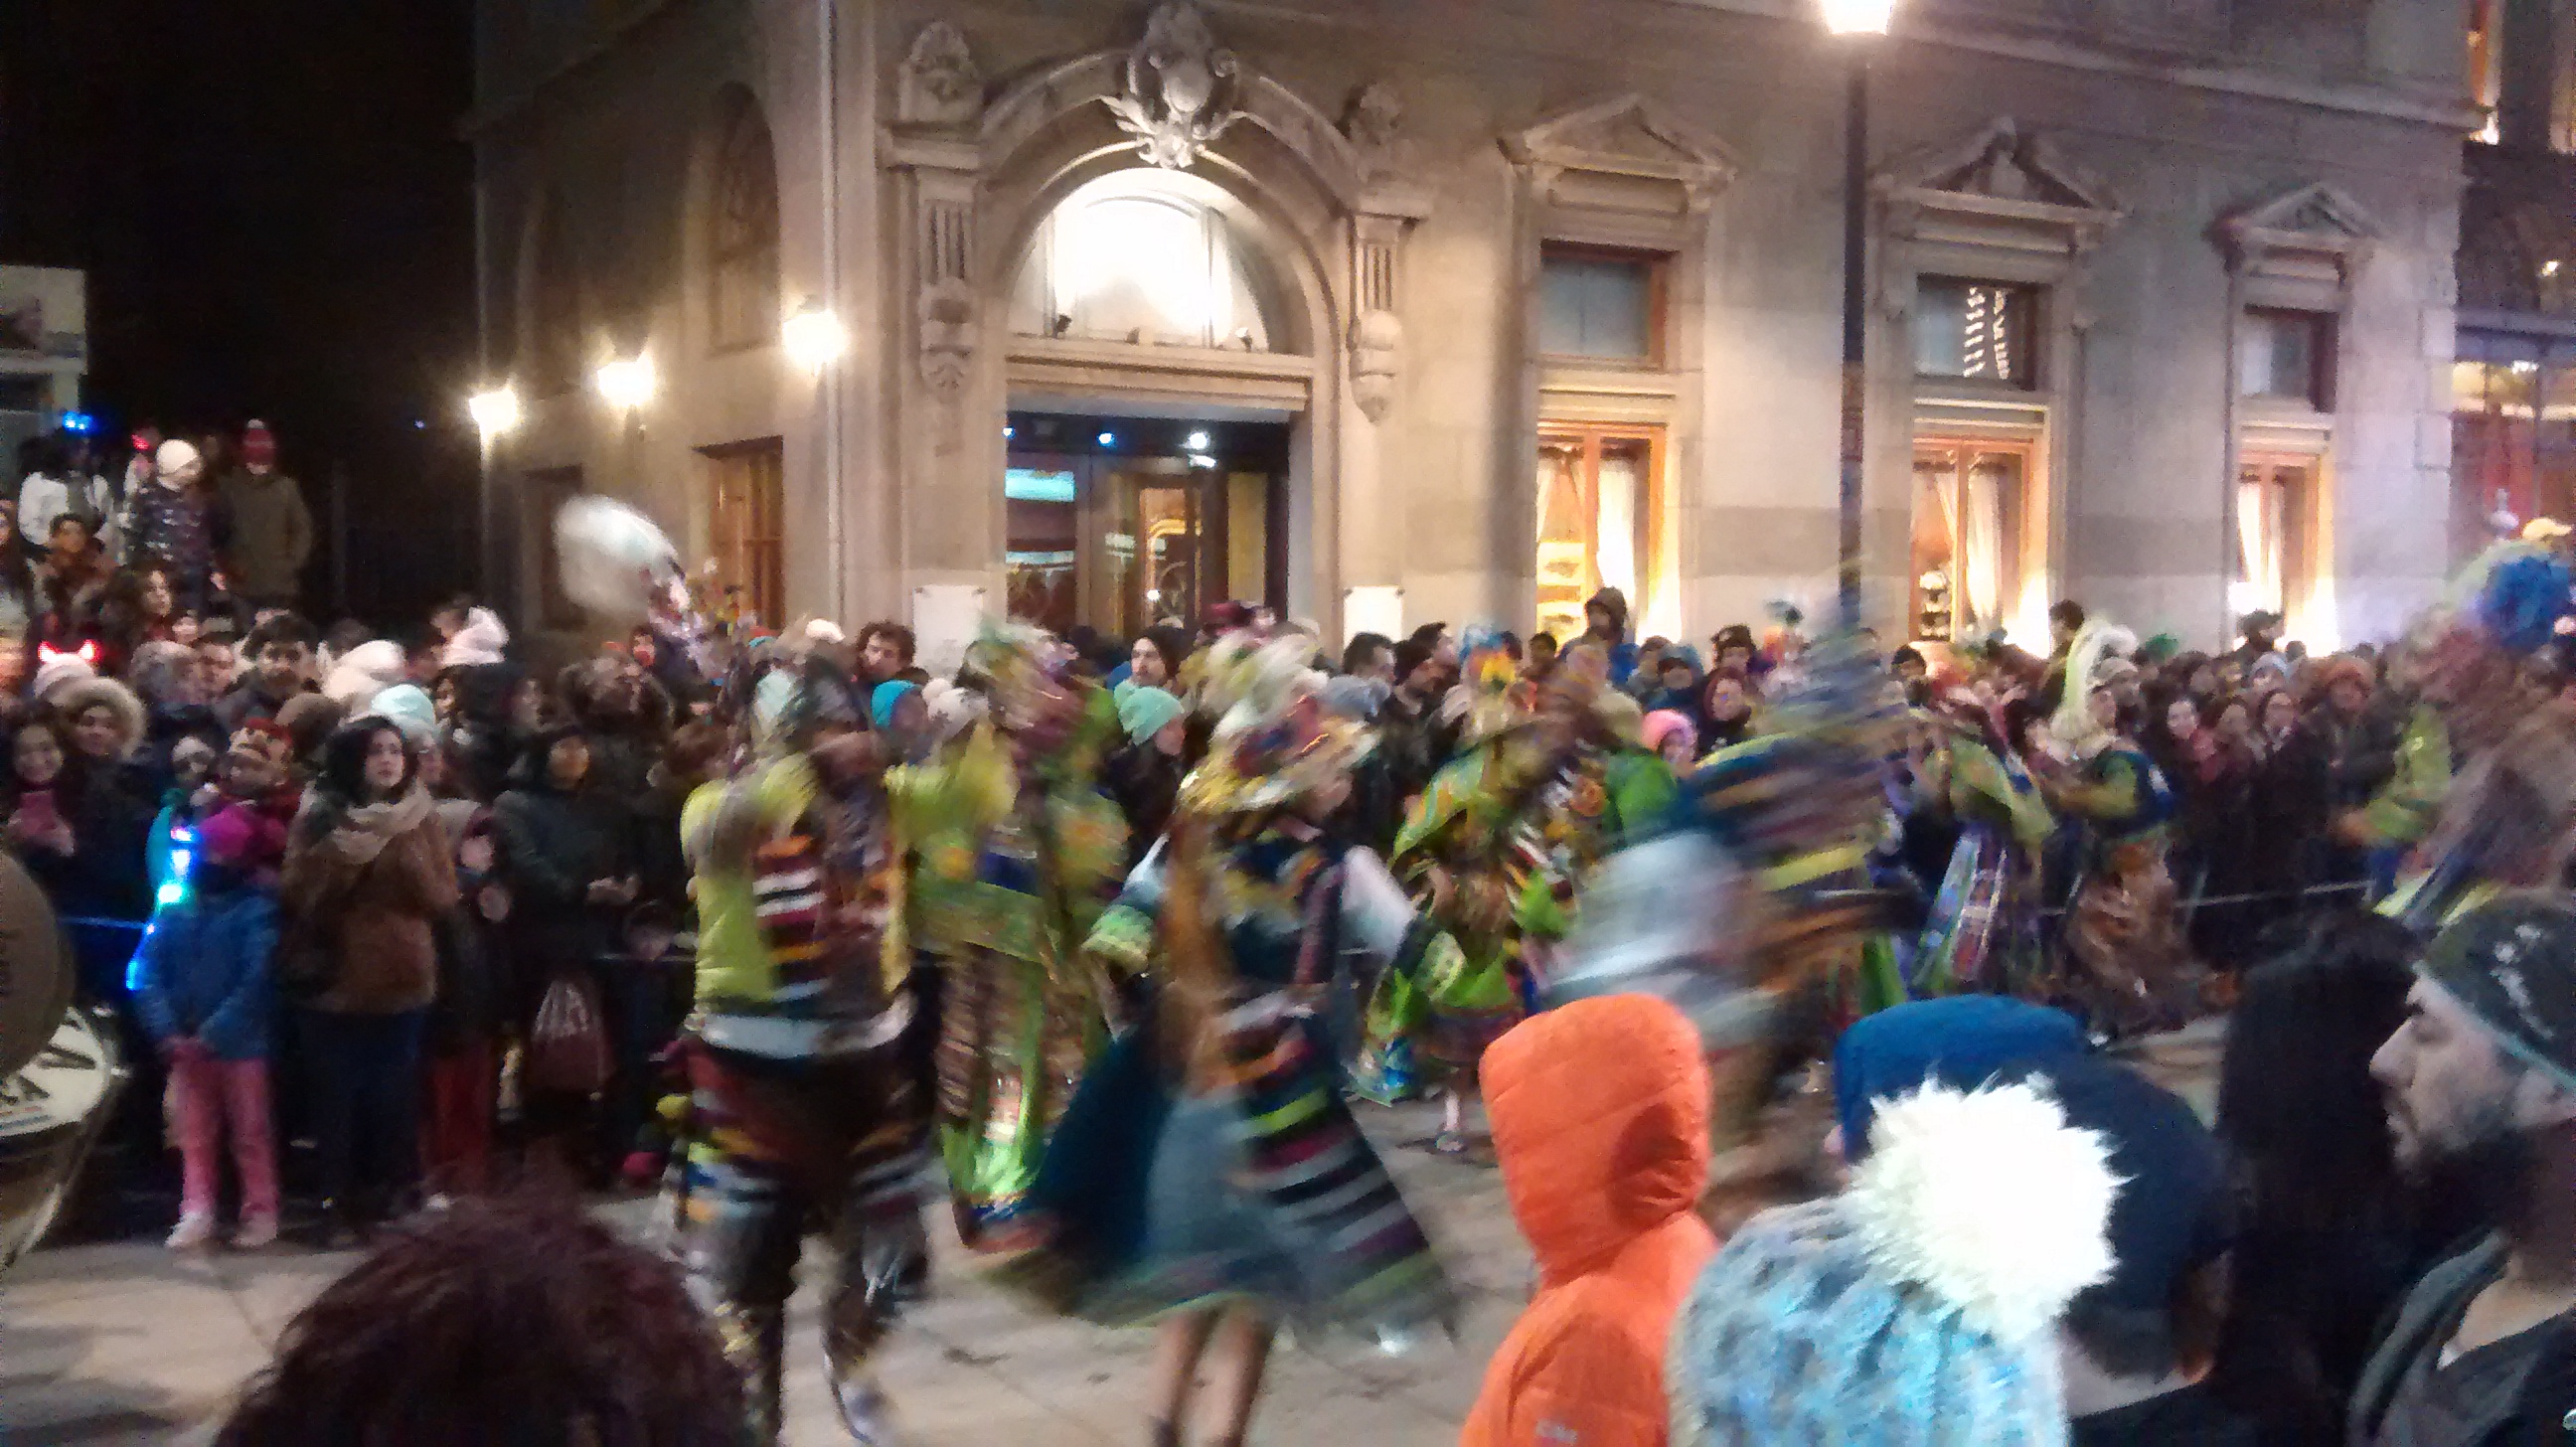 Murgas, carros alegóricos, disfraces y mucha alegría en el Carnaval de Invierno de Punta Arenas